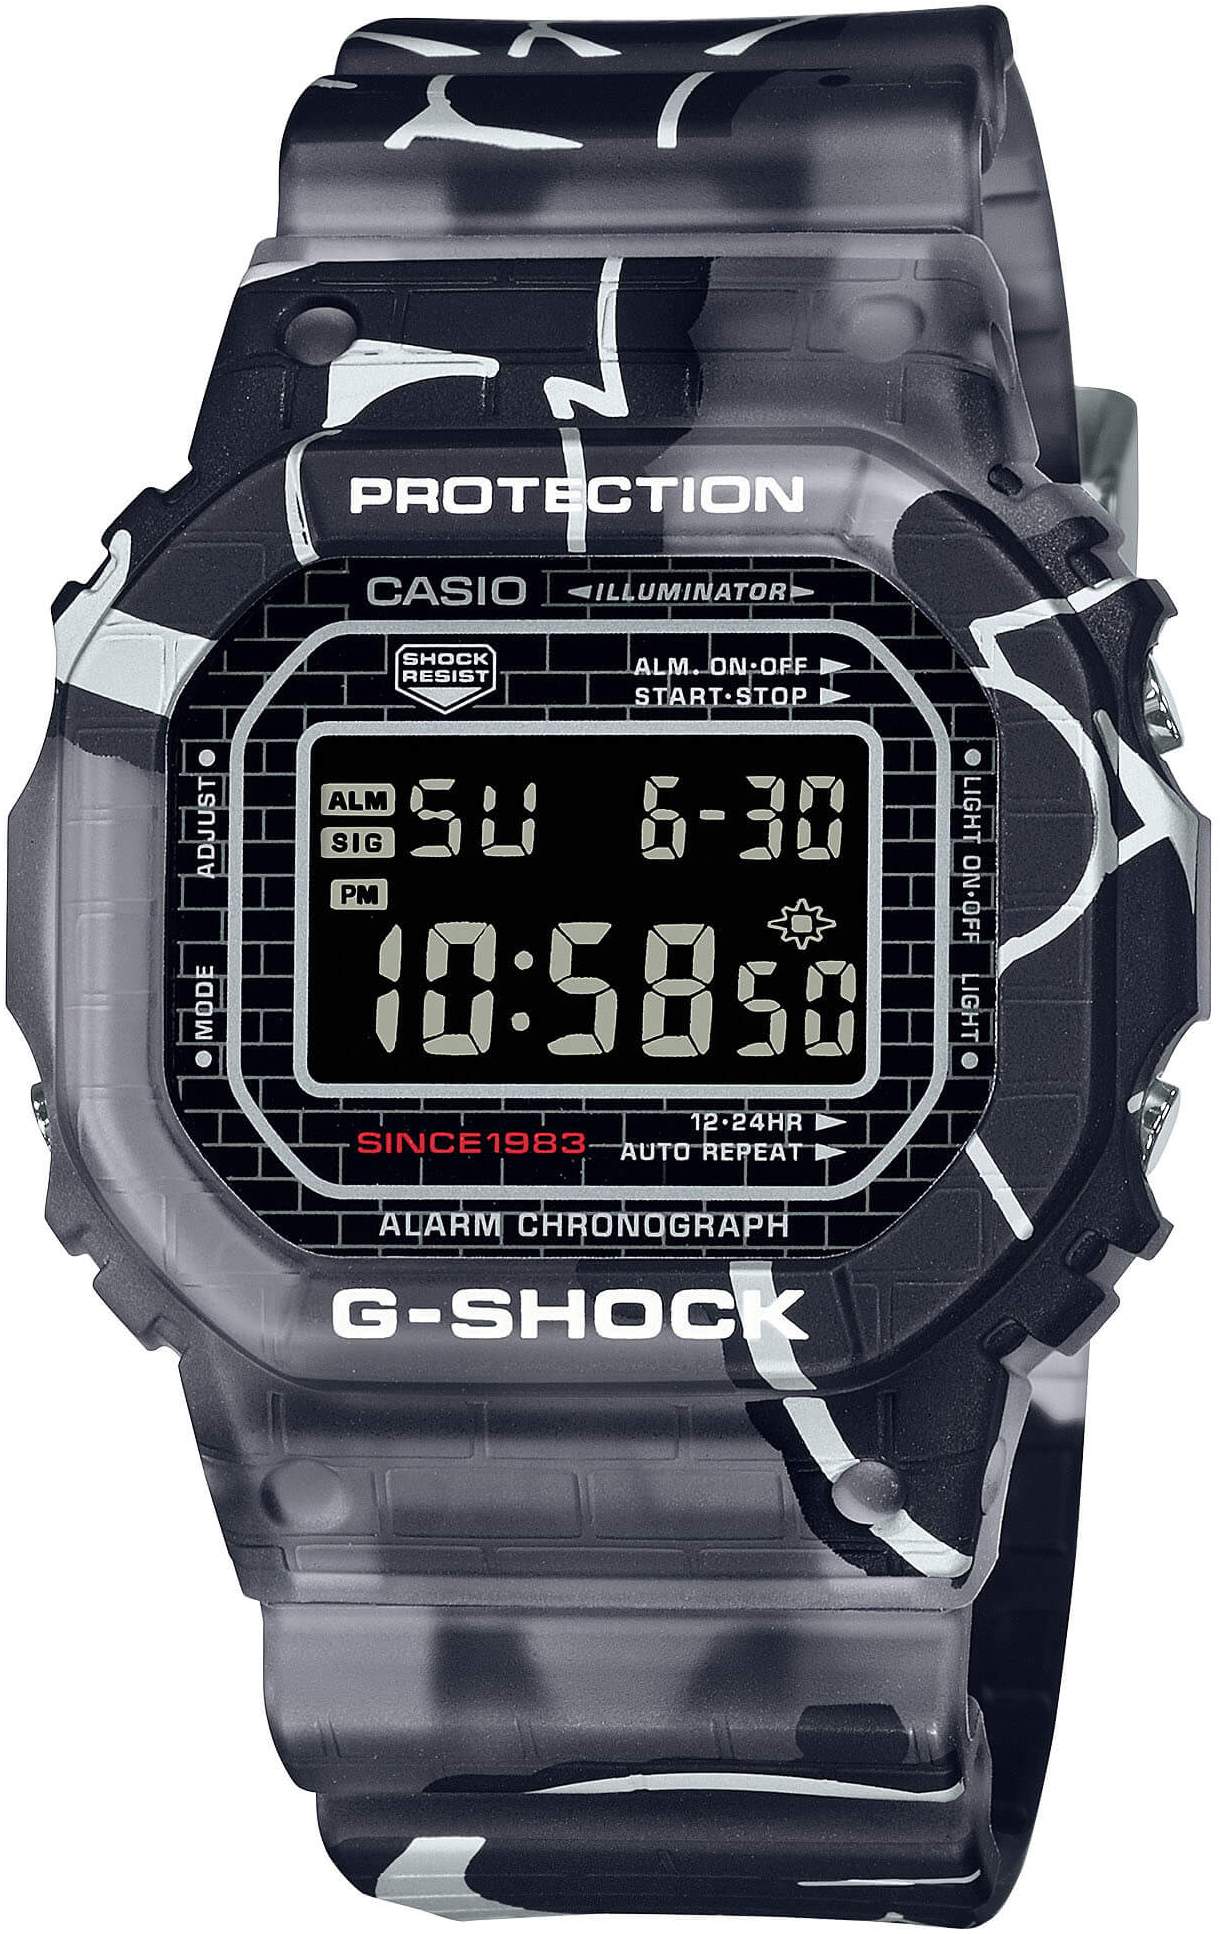 Casio G-Shock DW-5000SS-1ER